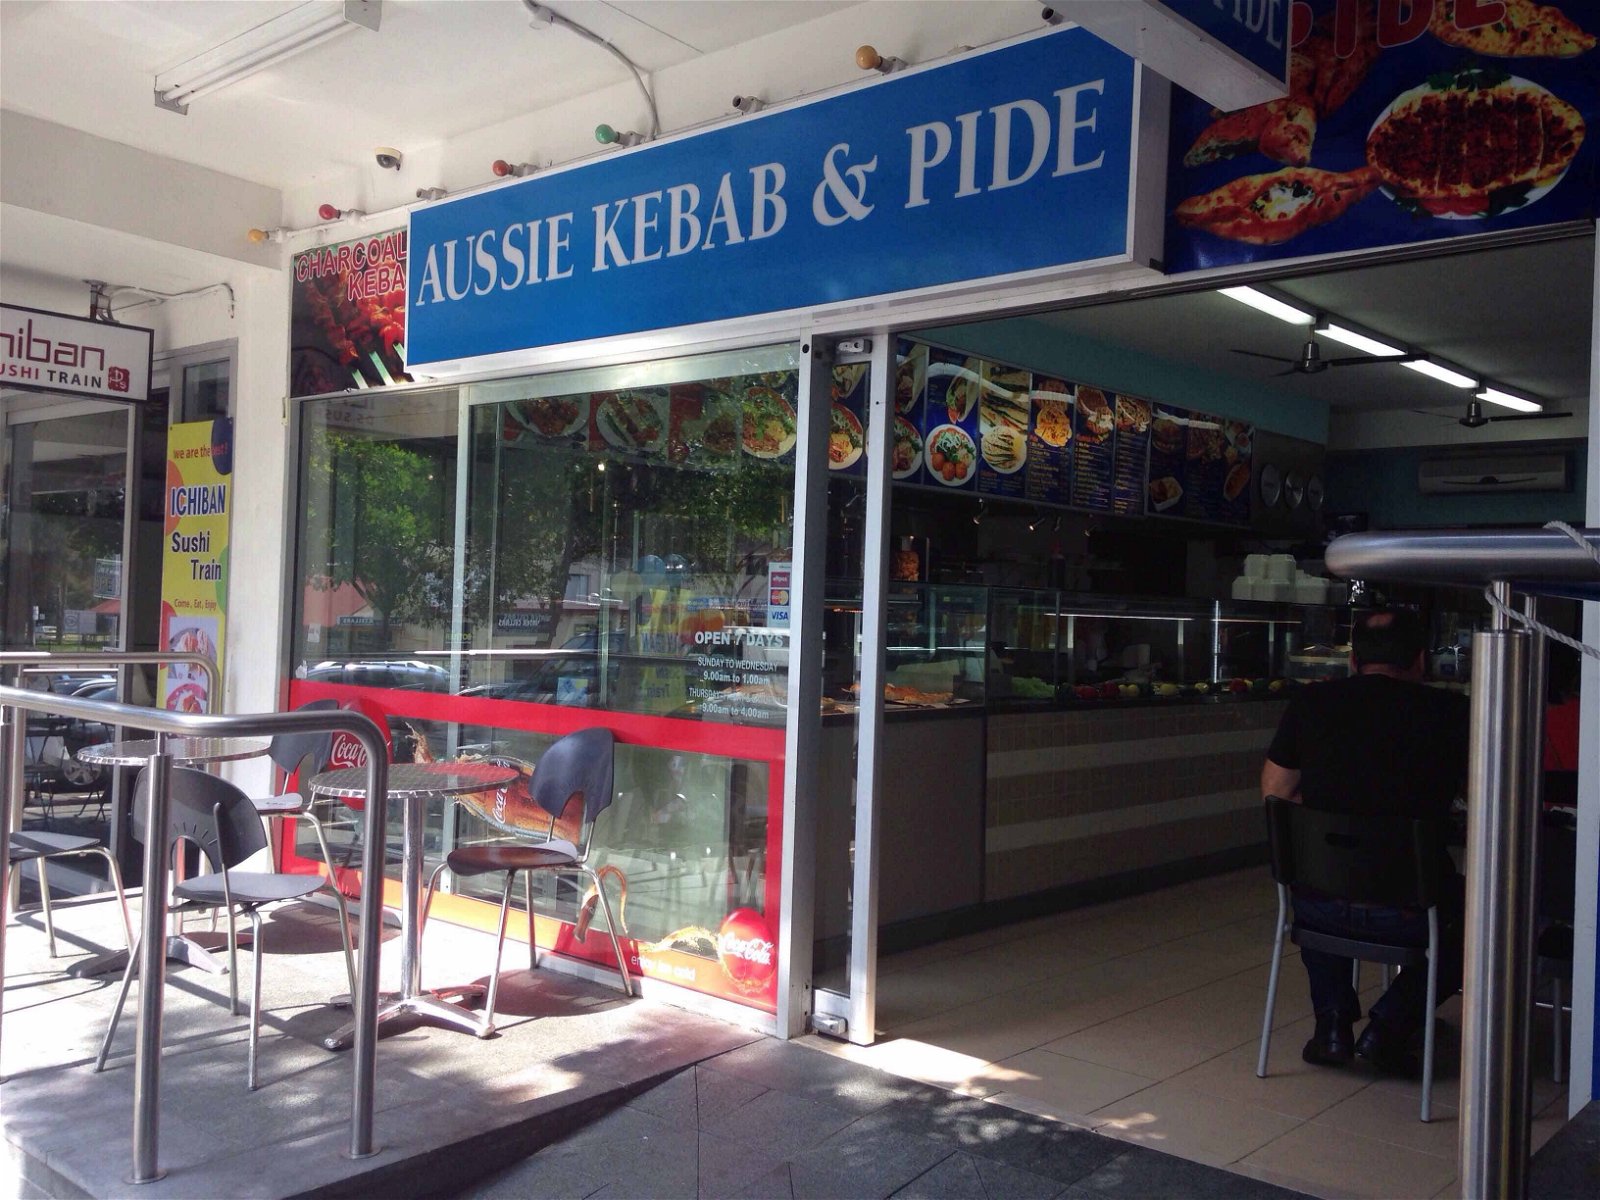 Aussie Kebab  Pide - Tourism Gold Coast